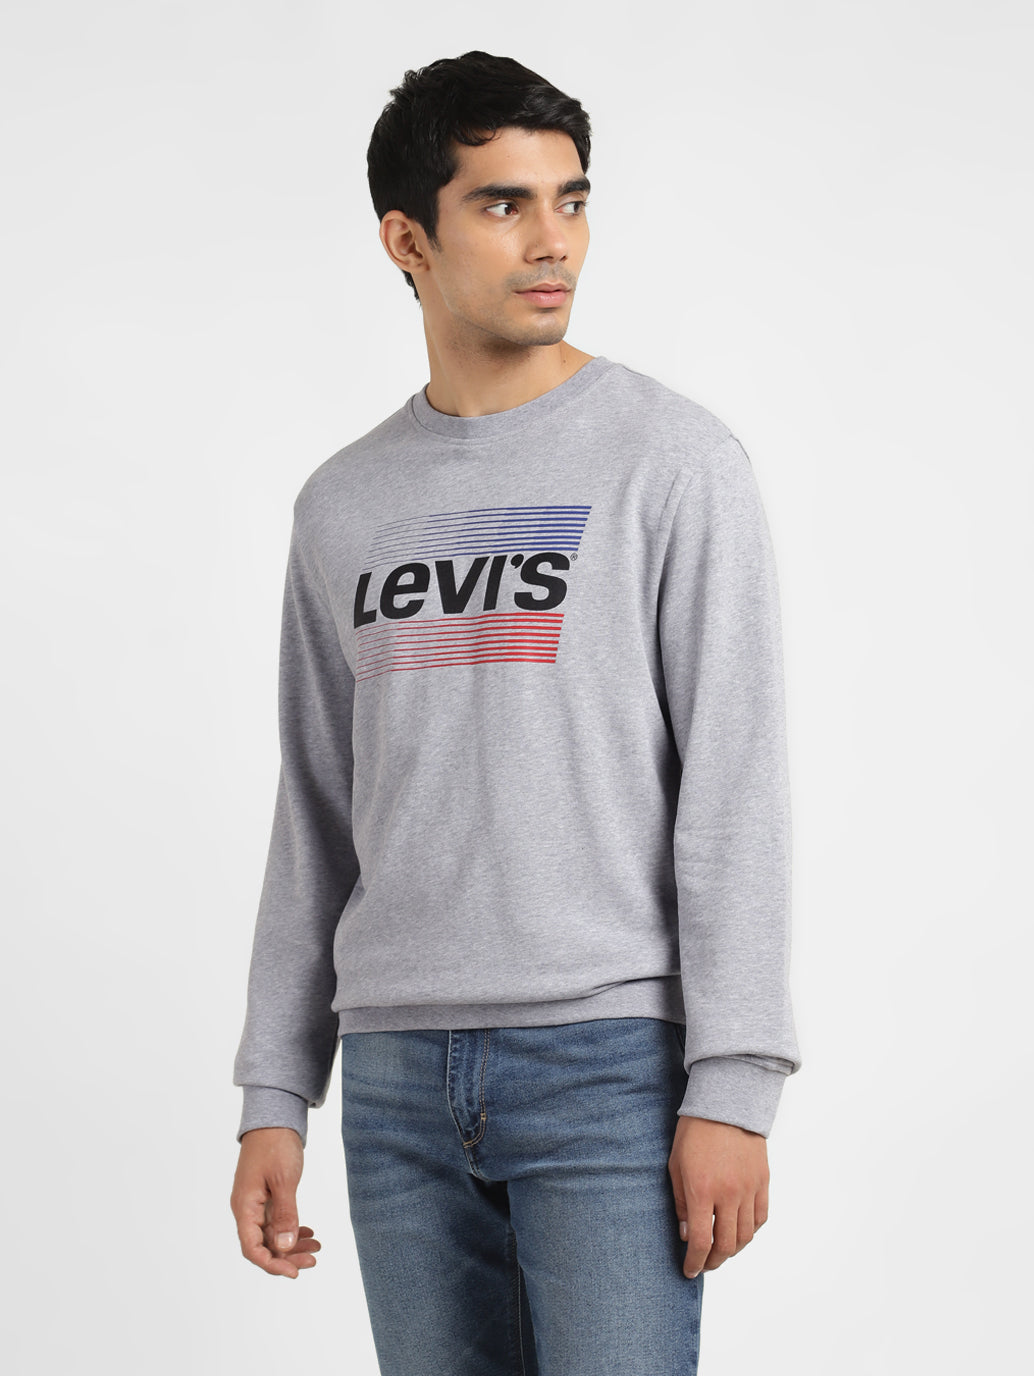 Men's Solid Grey Crew Neck Sweatshirt